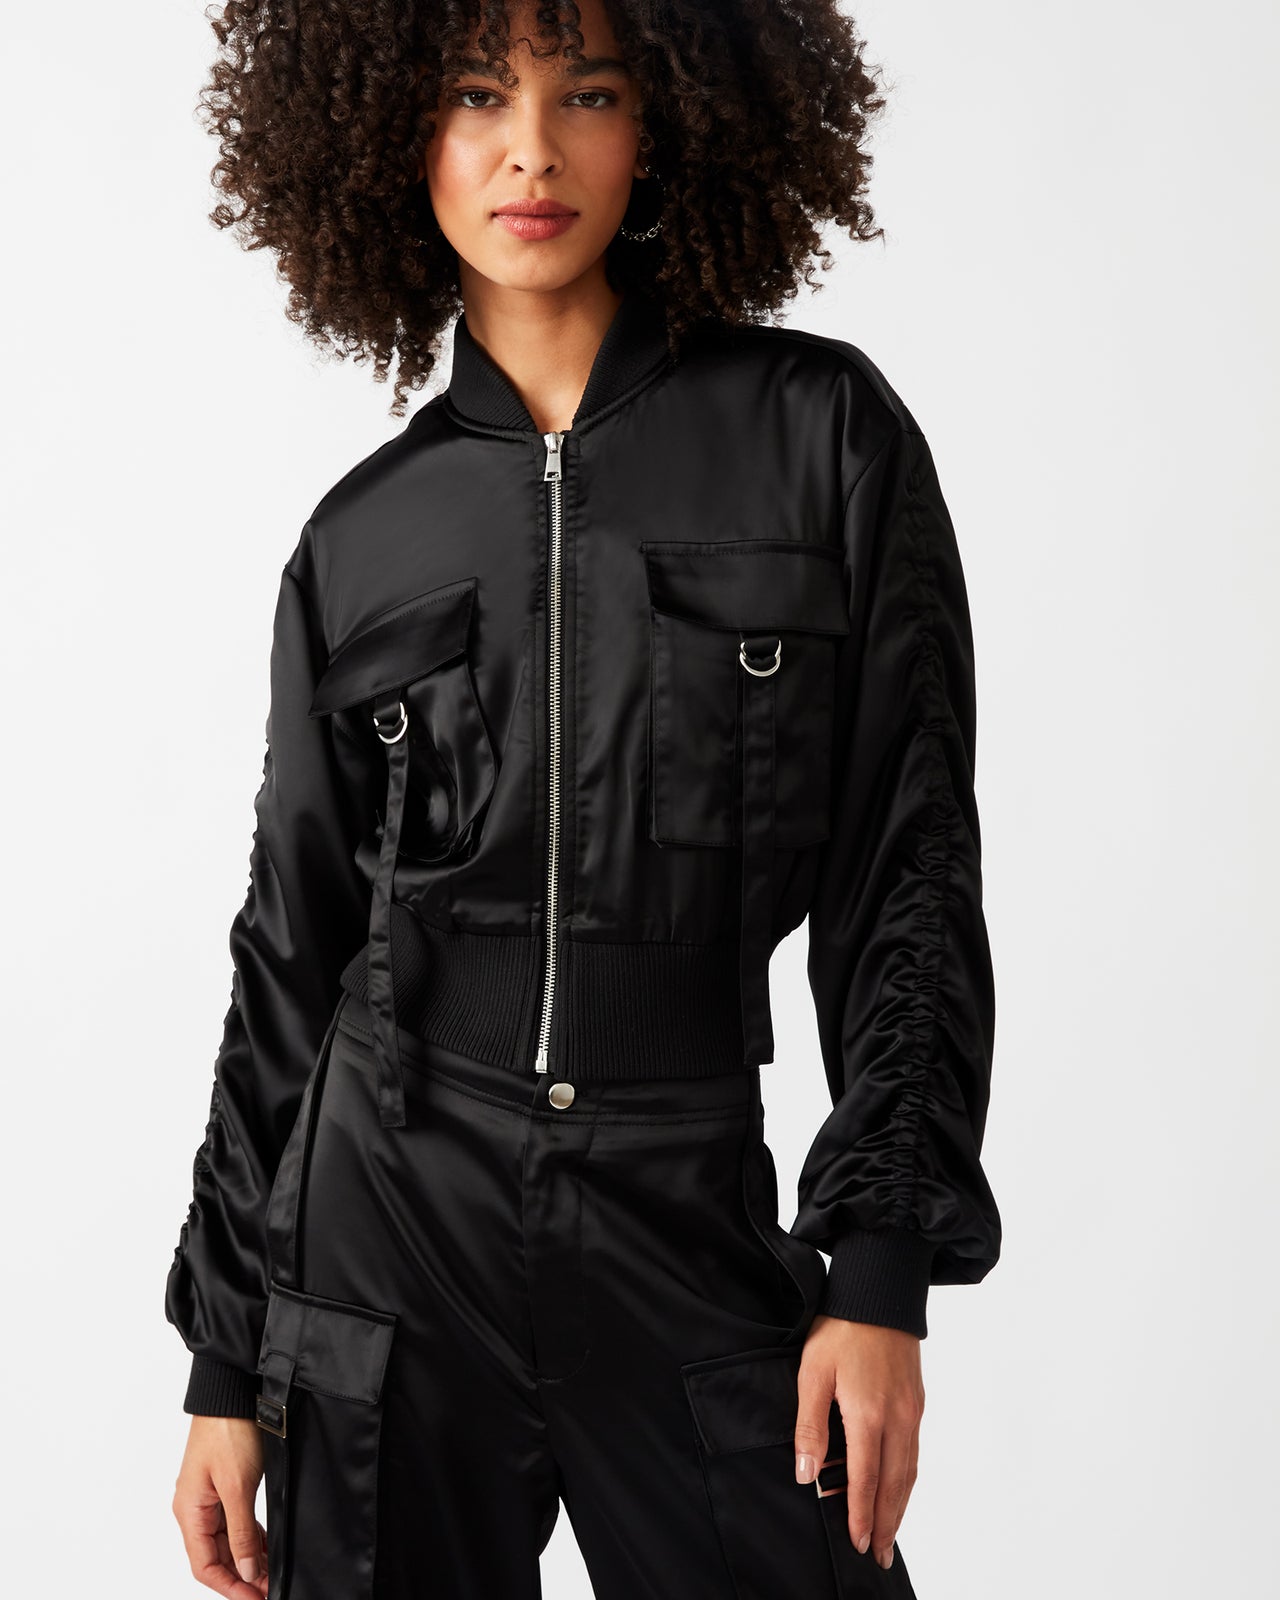 Costa Black Jacket, Jacket by Steve Madden | LIT Boutique